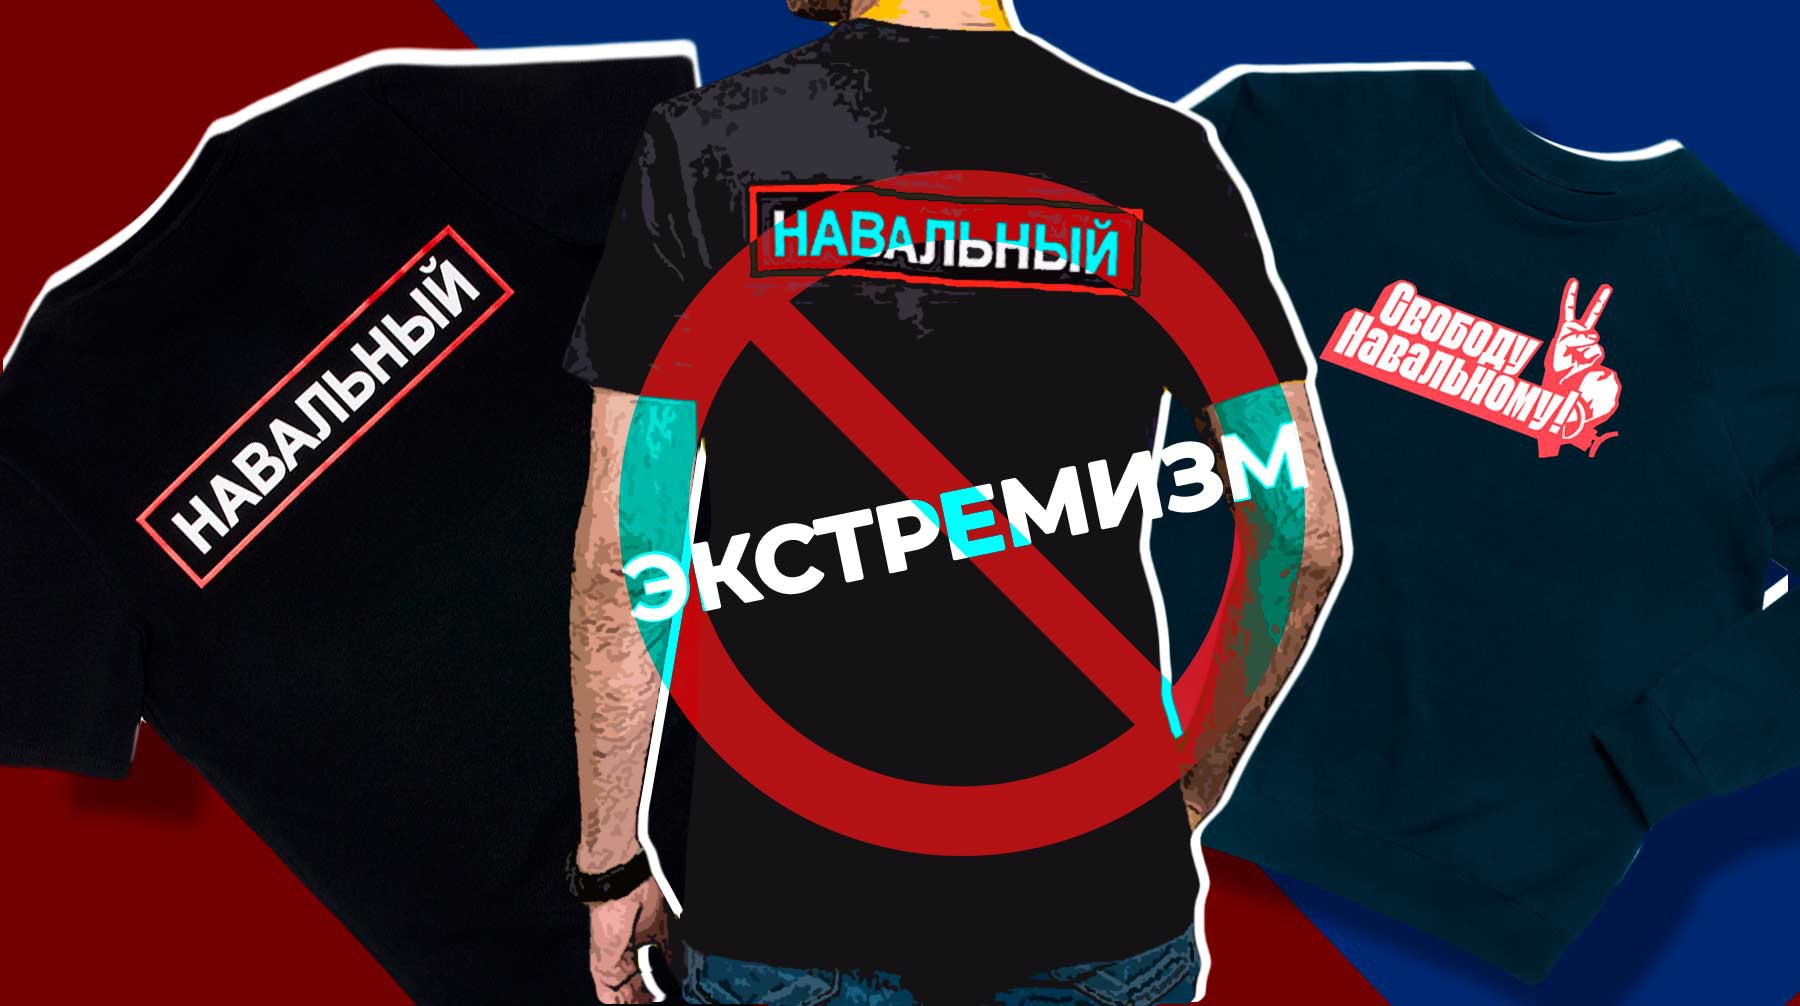 Dailystorm - Носить вещи и атрибутику из интернет-магазина Алексея Навального станет опасно